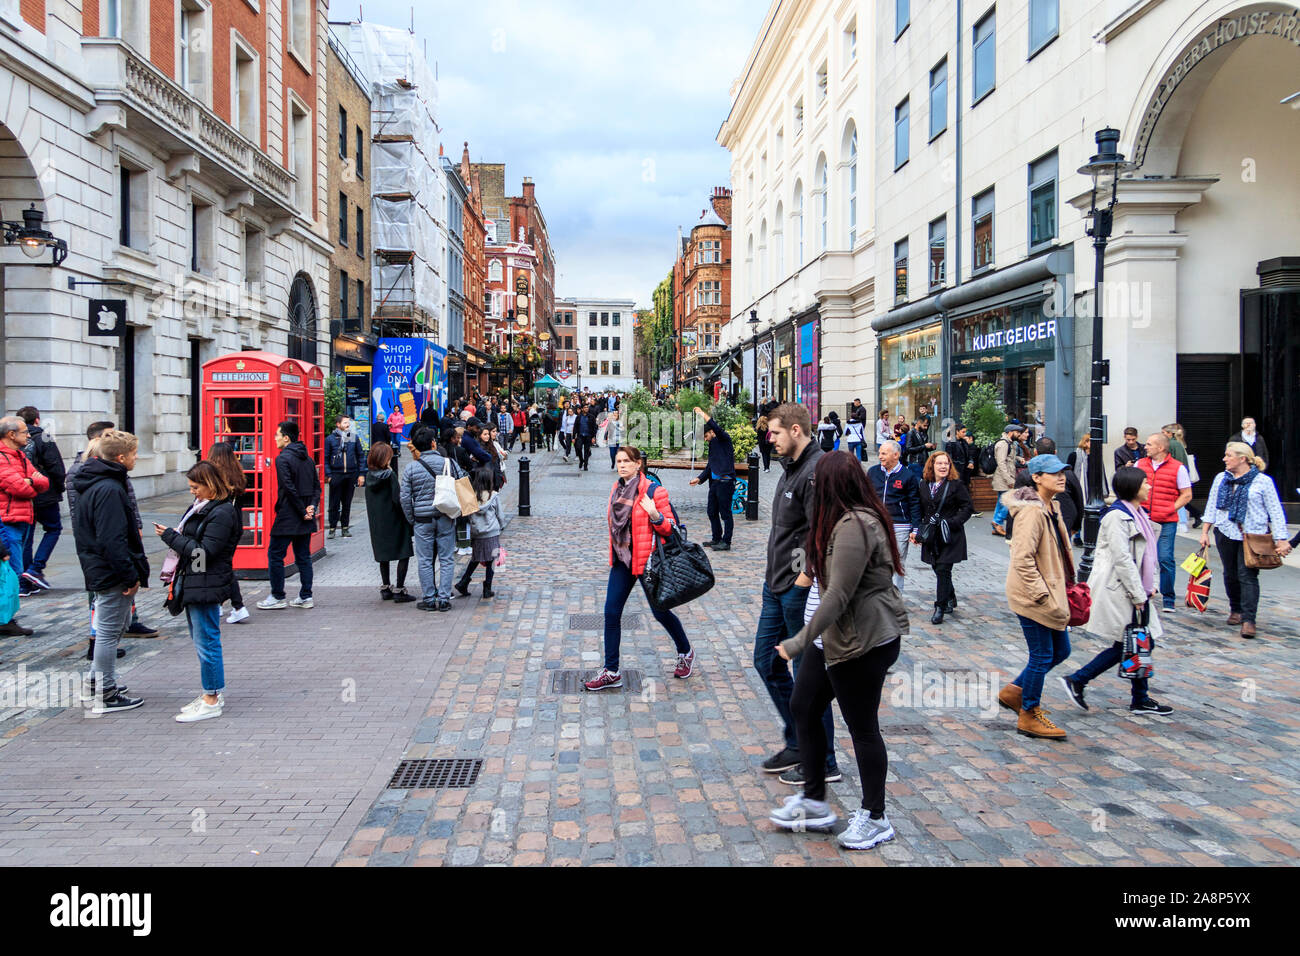 Consommateurs et aux touristes dans la région de James Street, Covent Garden, Londres, UK Banque D'Images